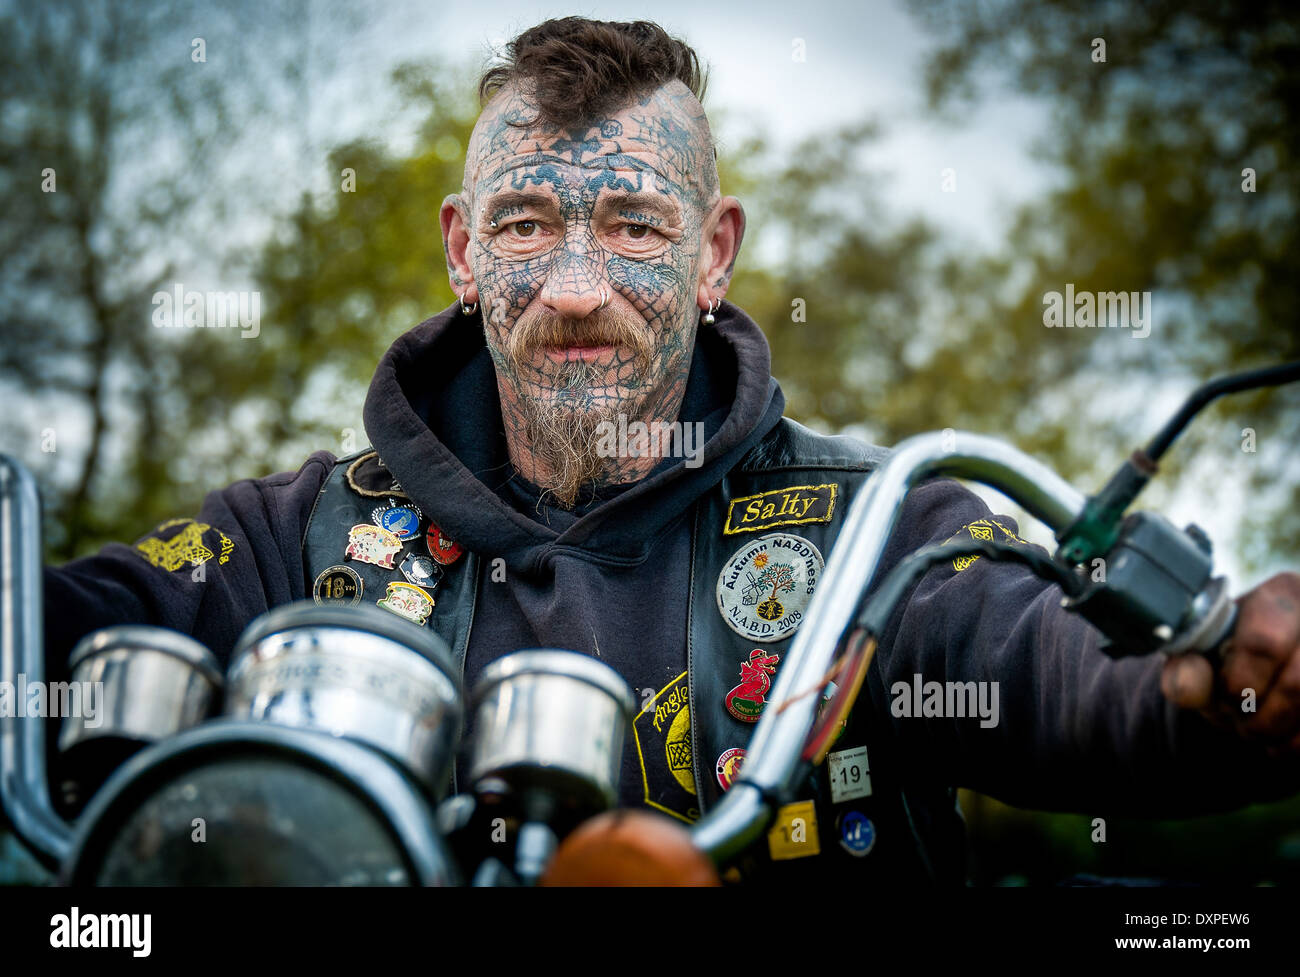 Homme biker avec des tatouages et des piercings du visage Banque D'Images